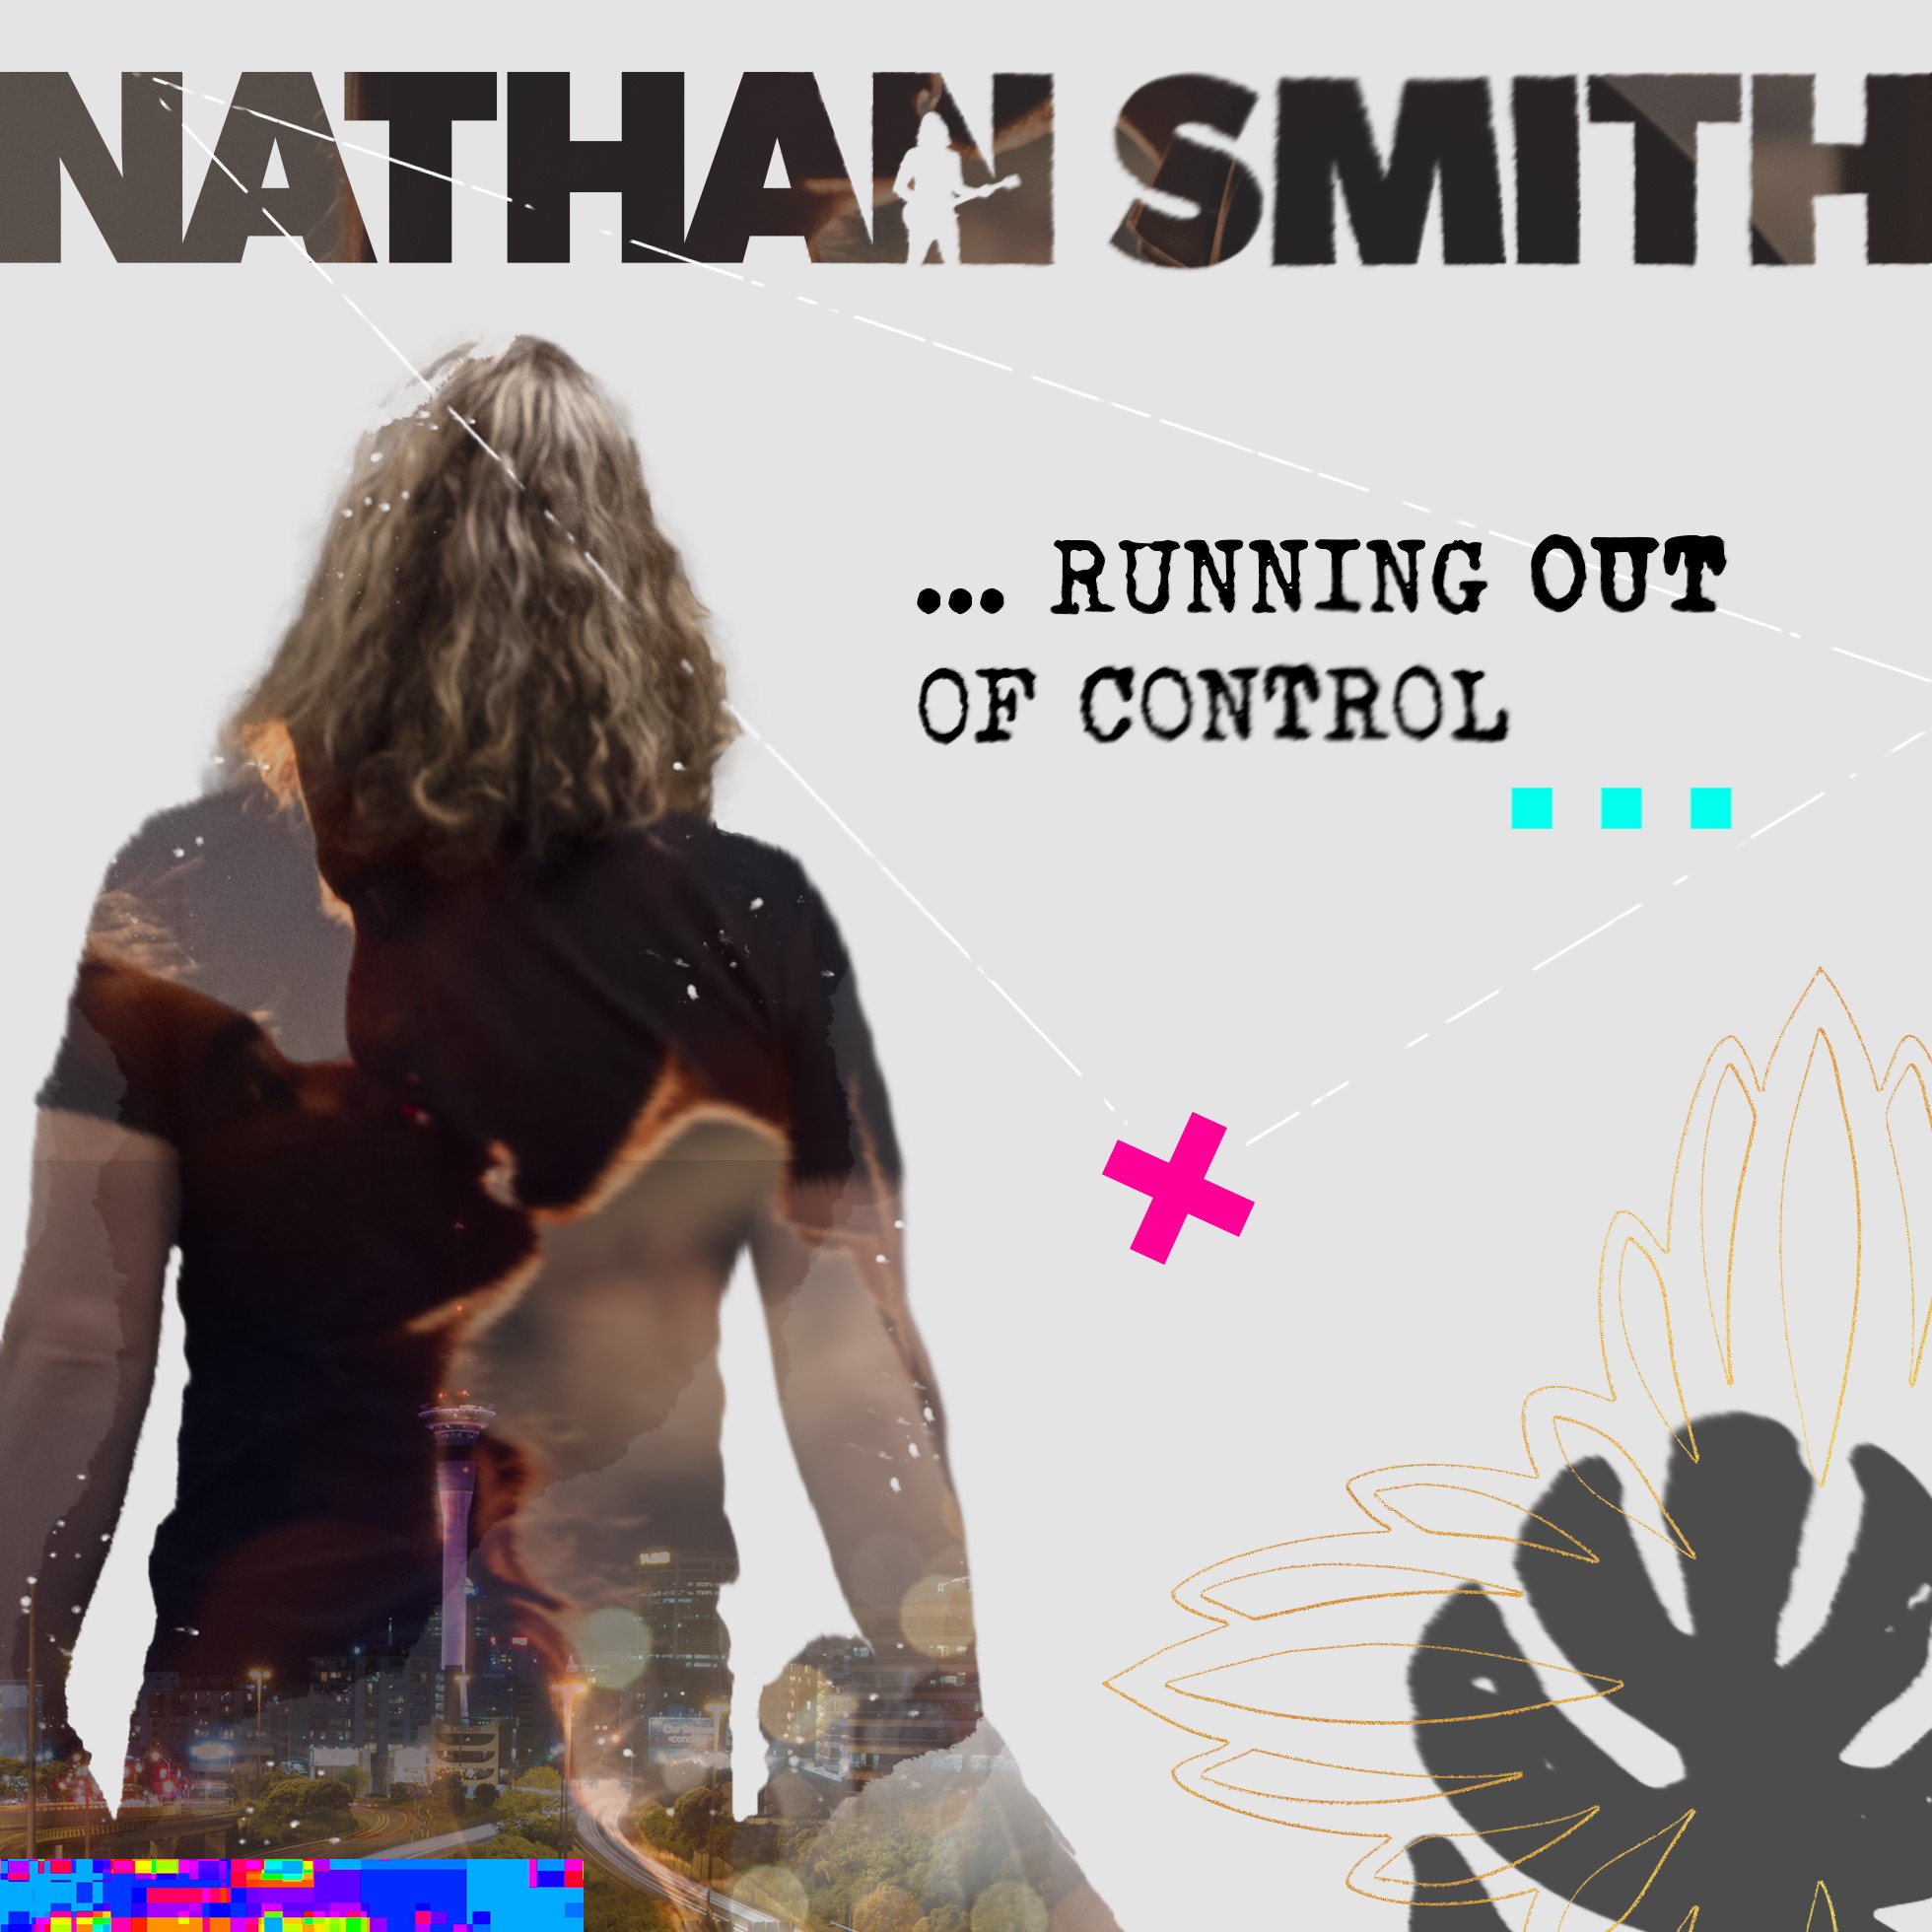 Nathan Smith bids SA farewell with last single release